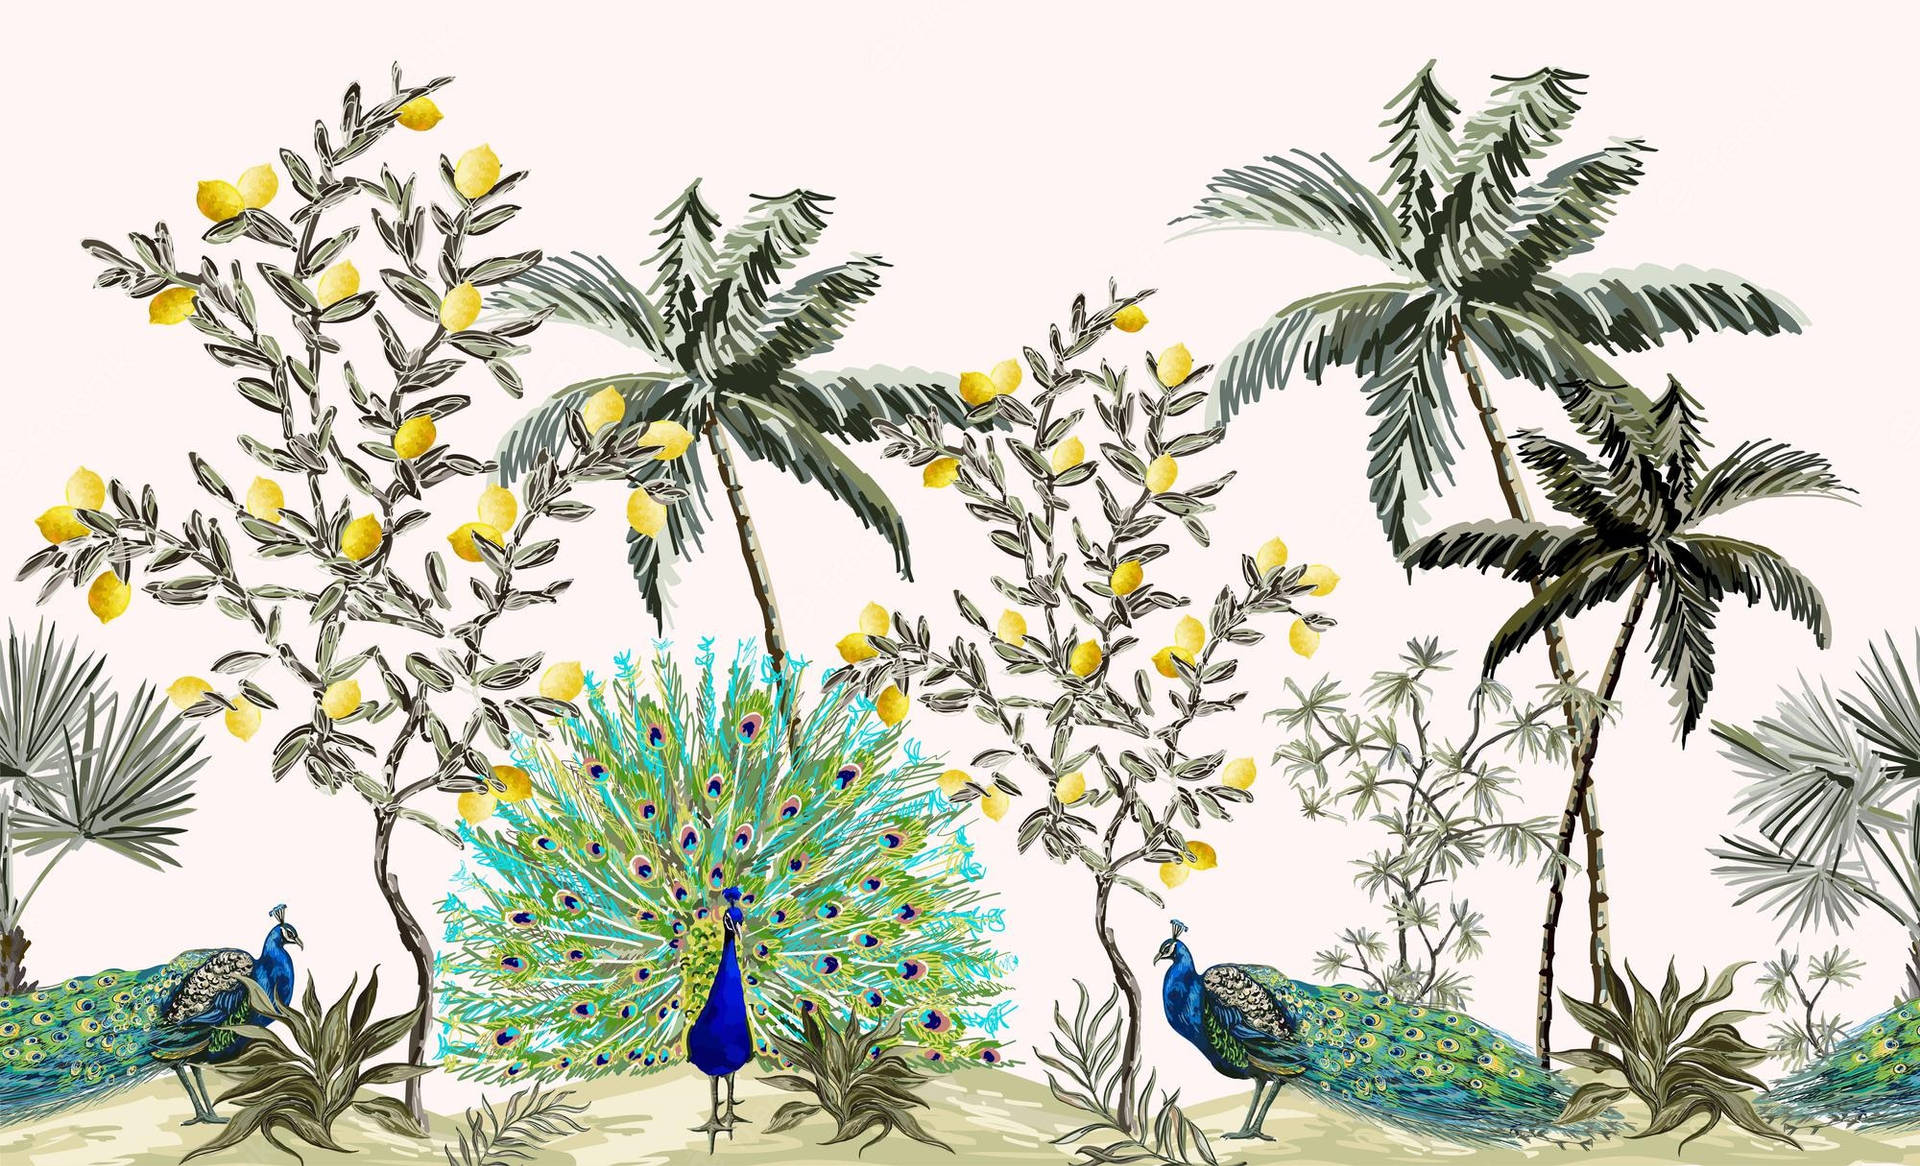 Chinoiserie Tropical Tema: Et orientalsk inspireret tema med tropiske blomster og dufte. Wallpaper